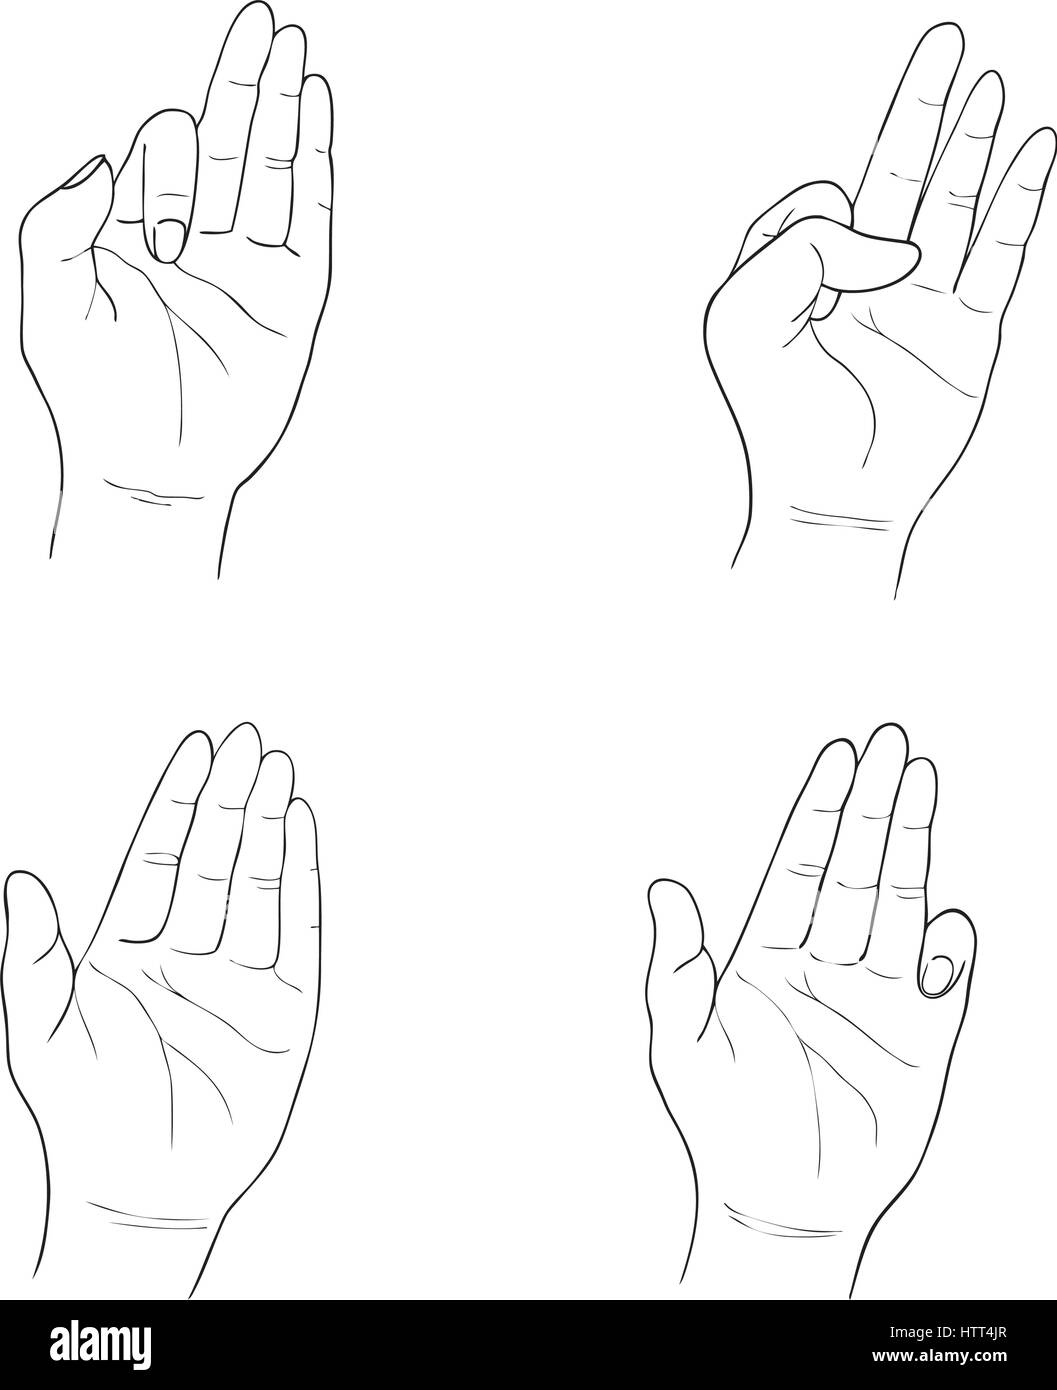 Handgezeichnete Skizze Satz von Hand signiert Gesten und Körpersprache, Isolated on White Background. Stock Vektor